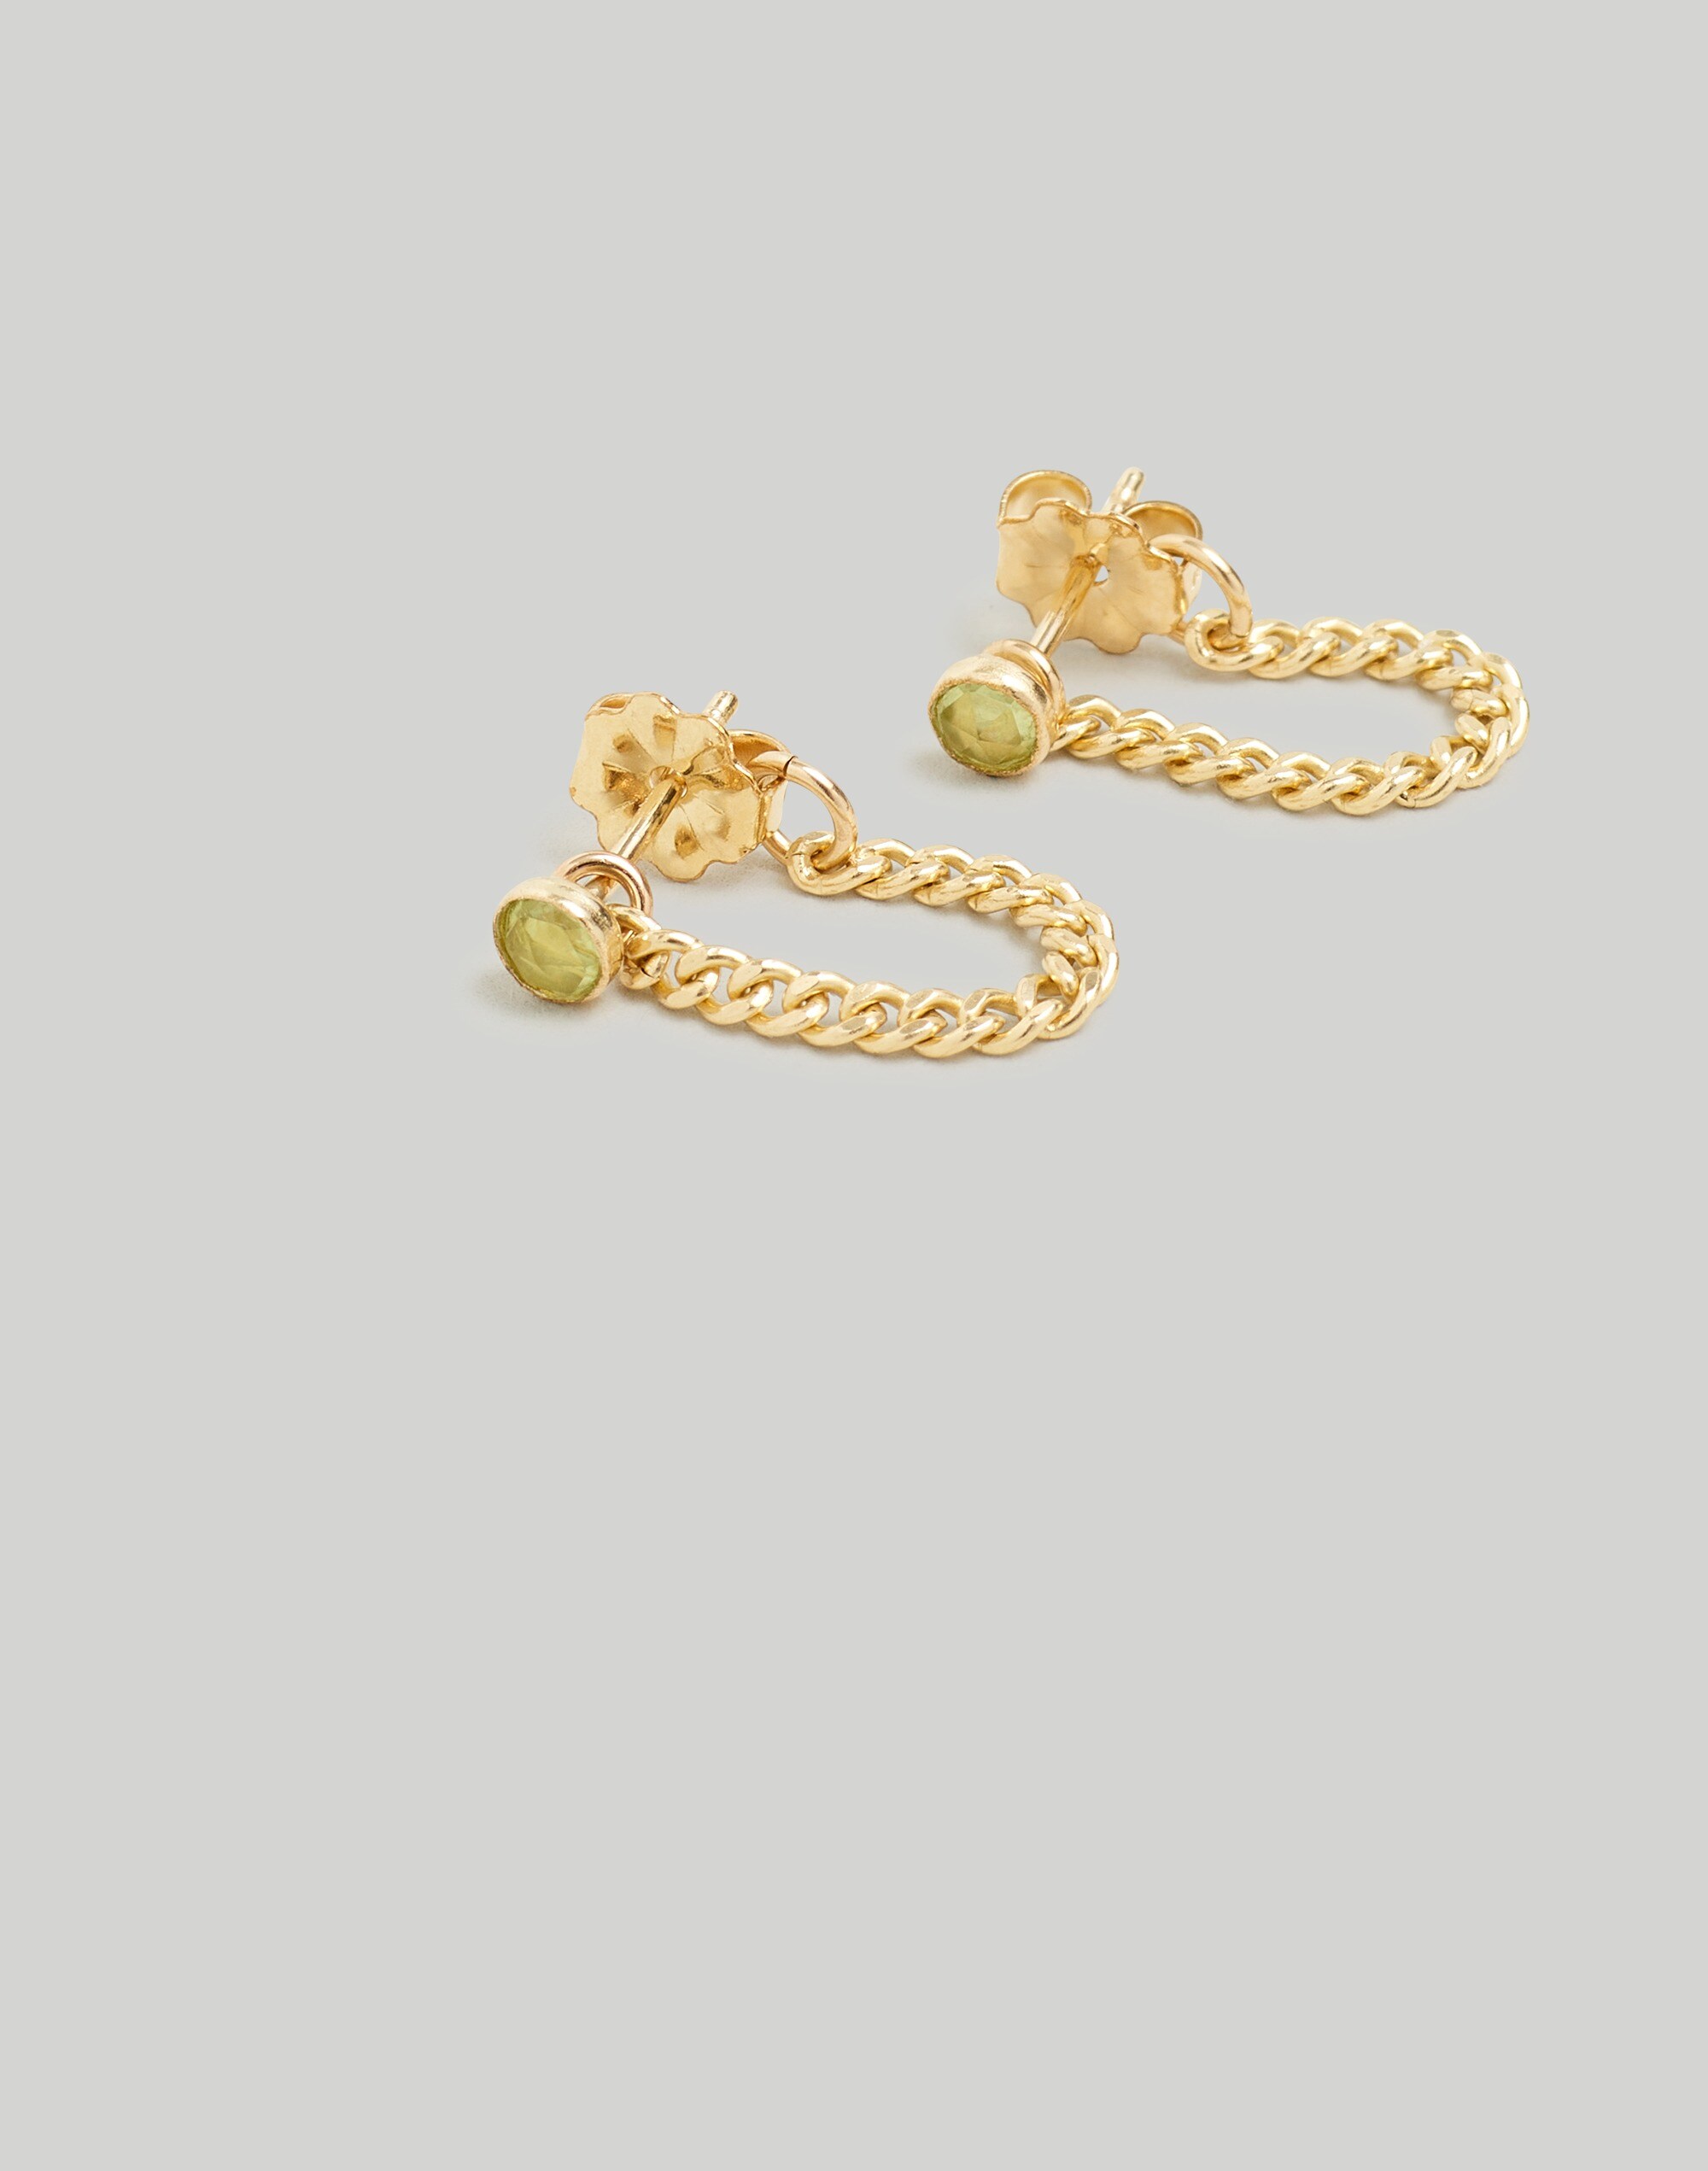 In Situ Jewelry 14k Gold-Filled Enver Stud Earrings